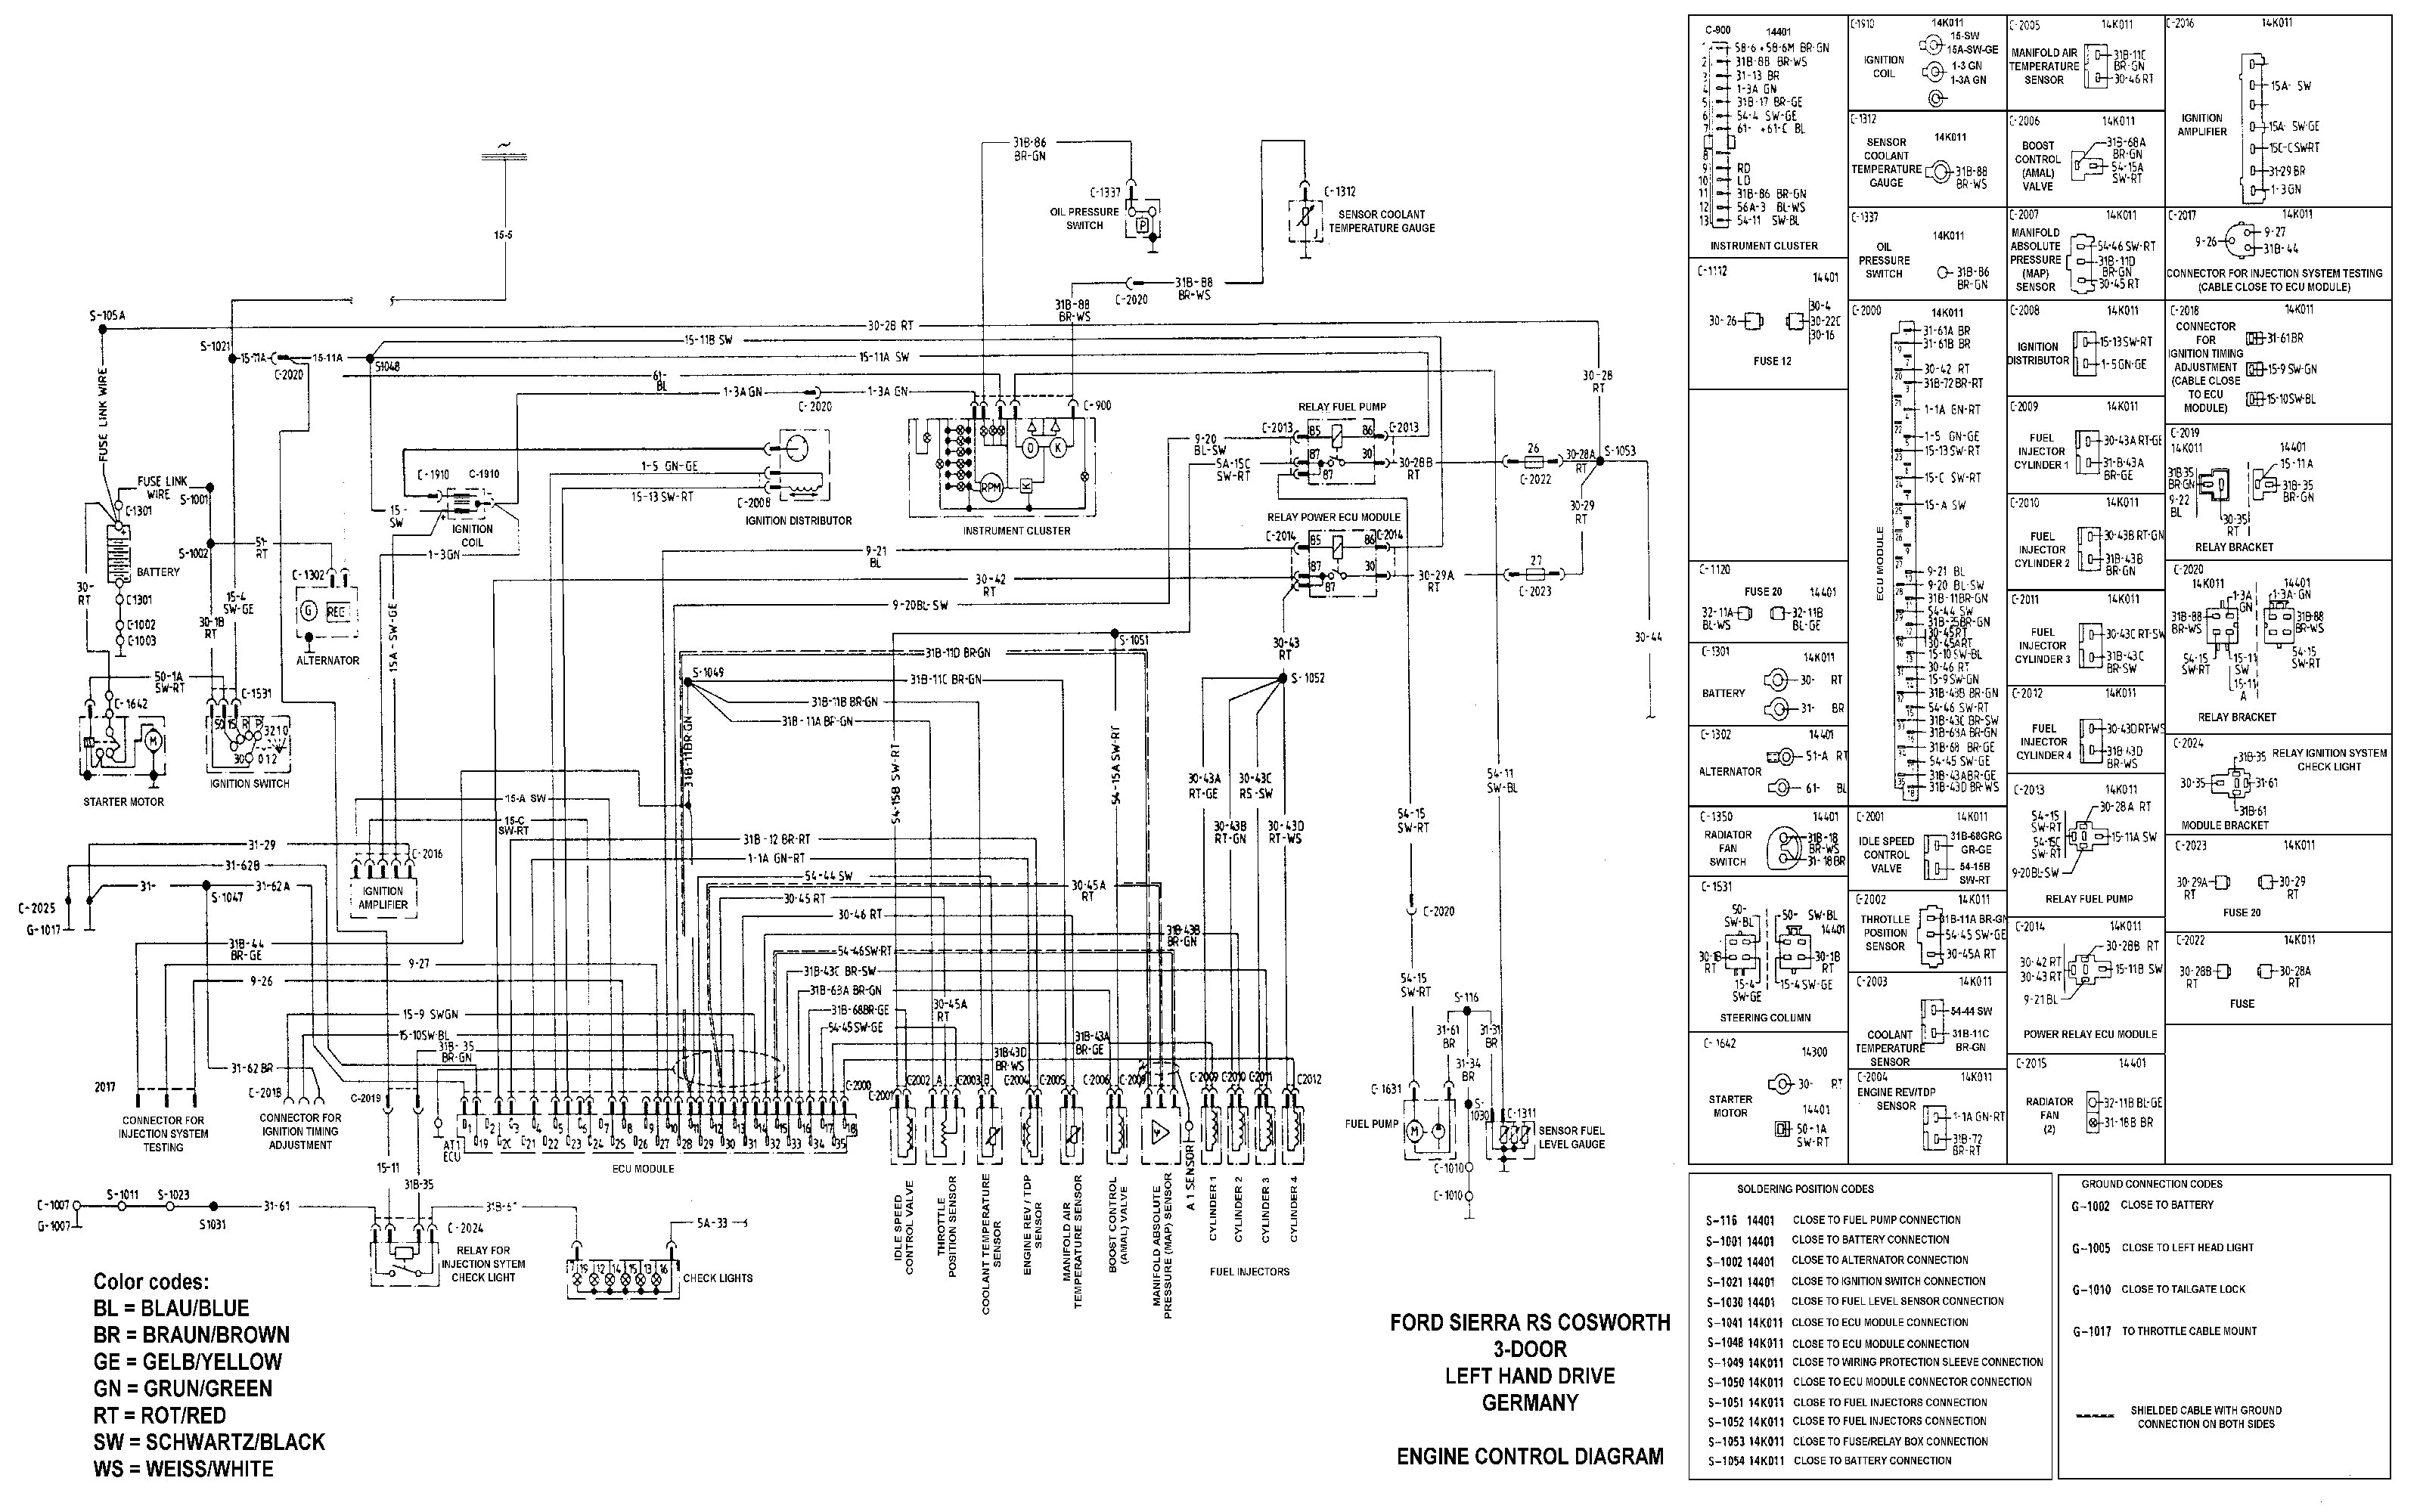 1997 ford festiva wiring diagram wiring diagram meta 1997 ford festiva wiring diagram